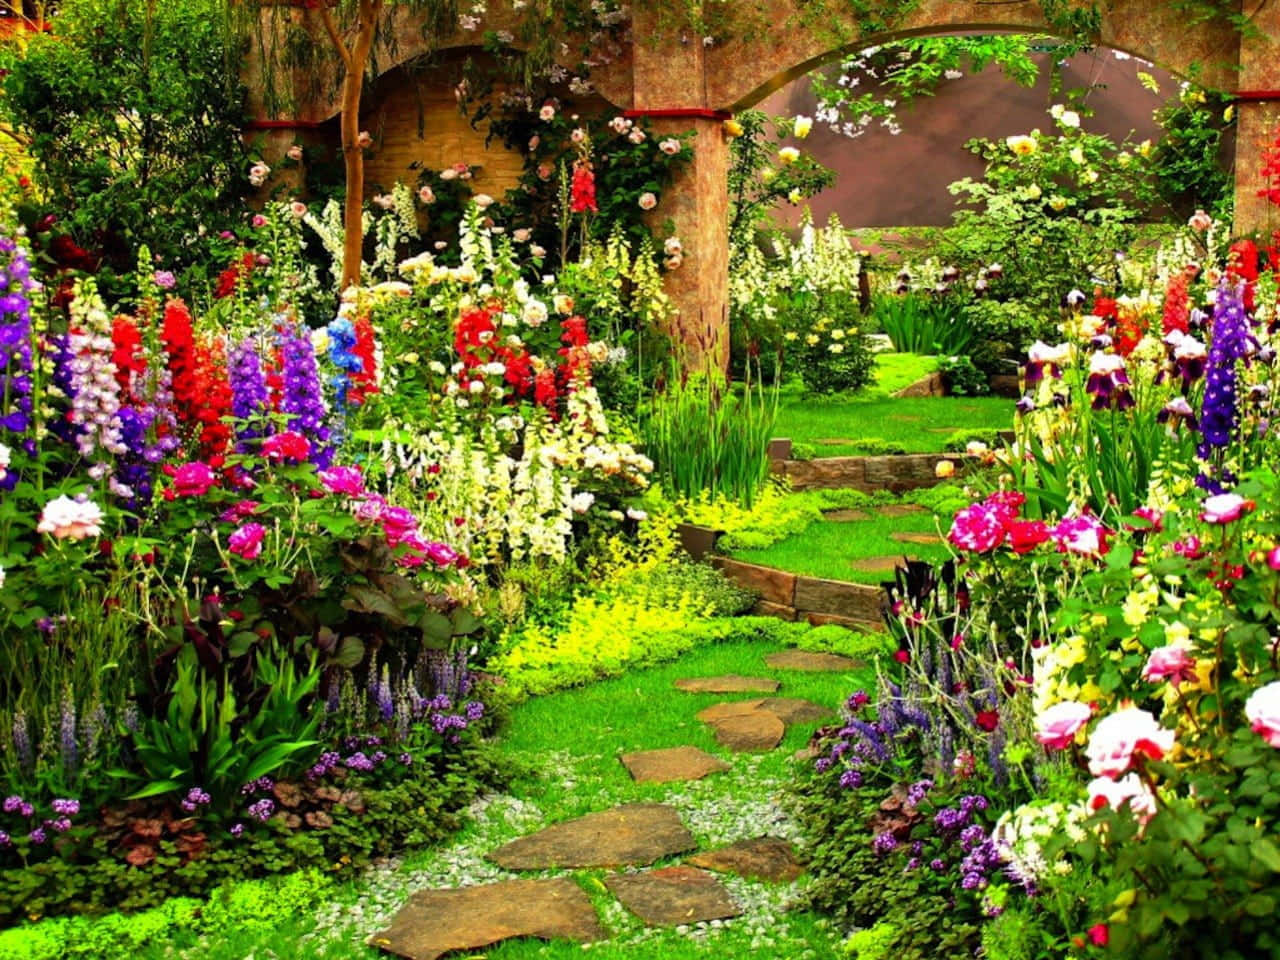 Share more than 82 new garden wallpaper latest - xkldase.edu.vn